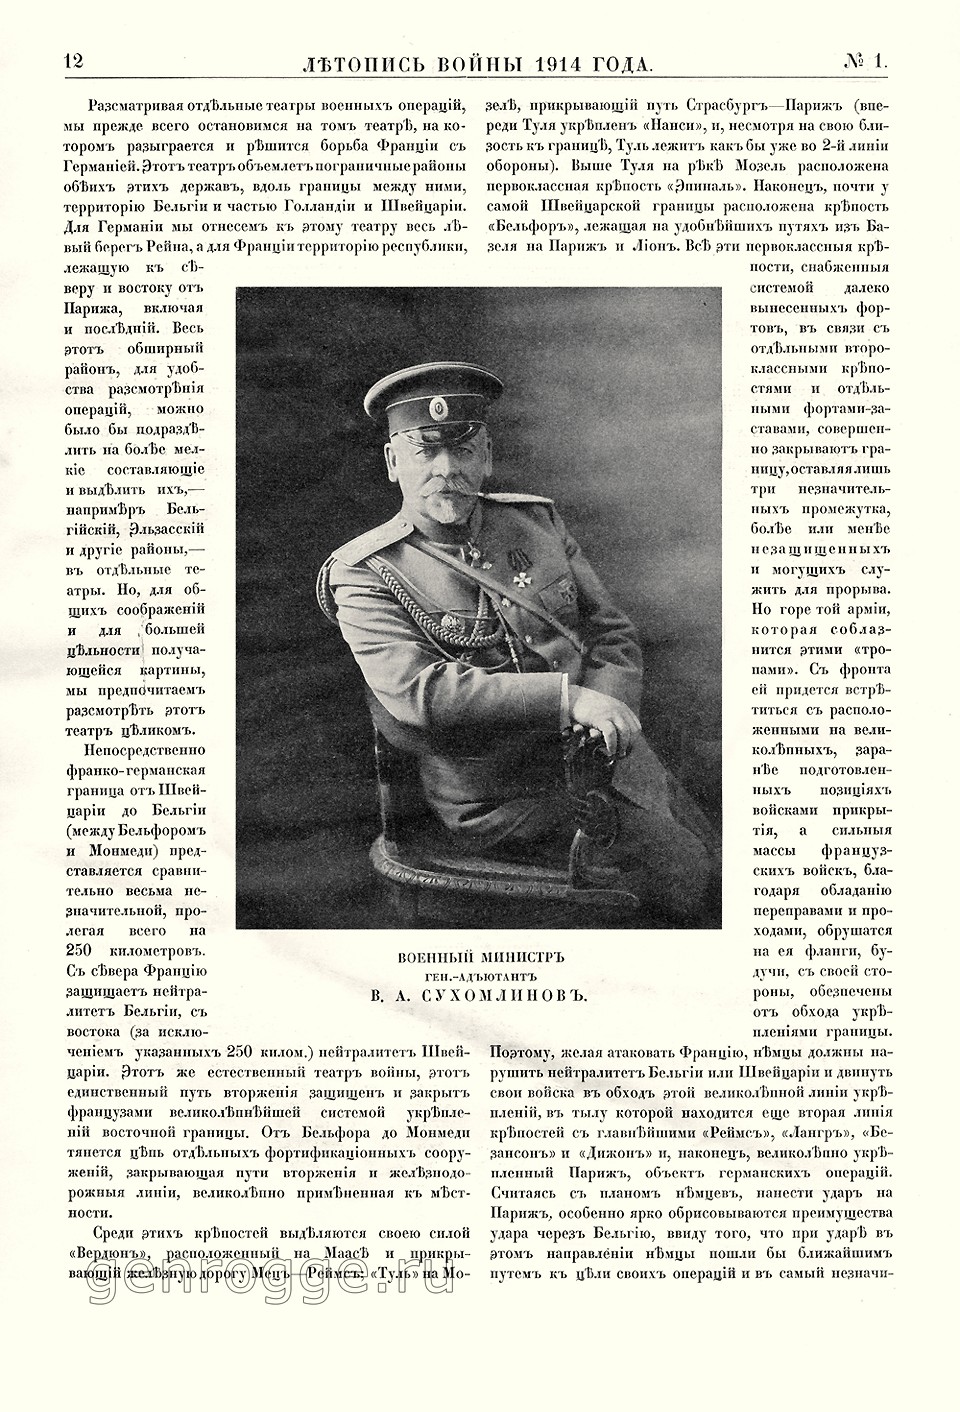   1914 . `1914 .,  1, . 12